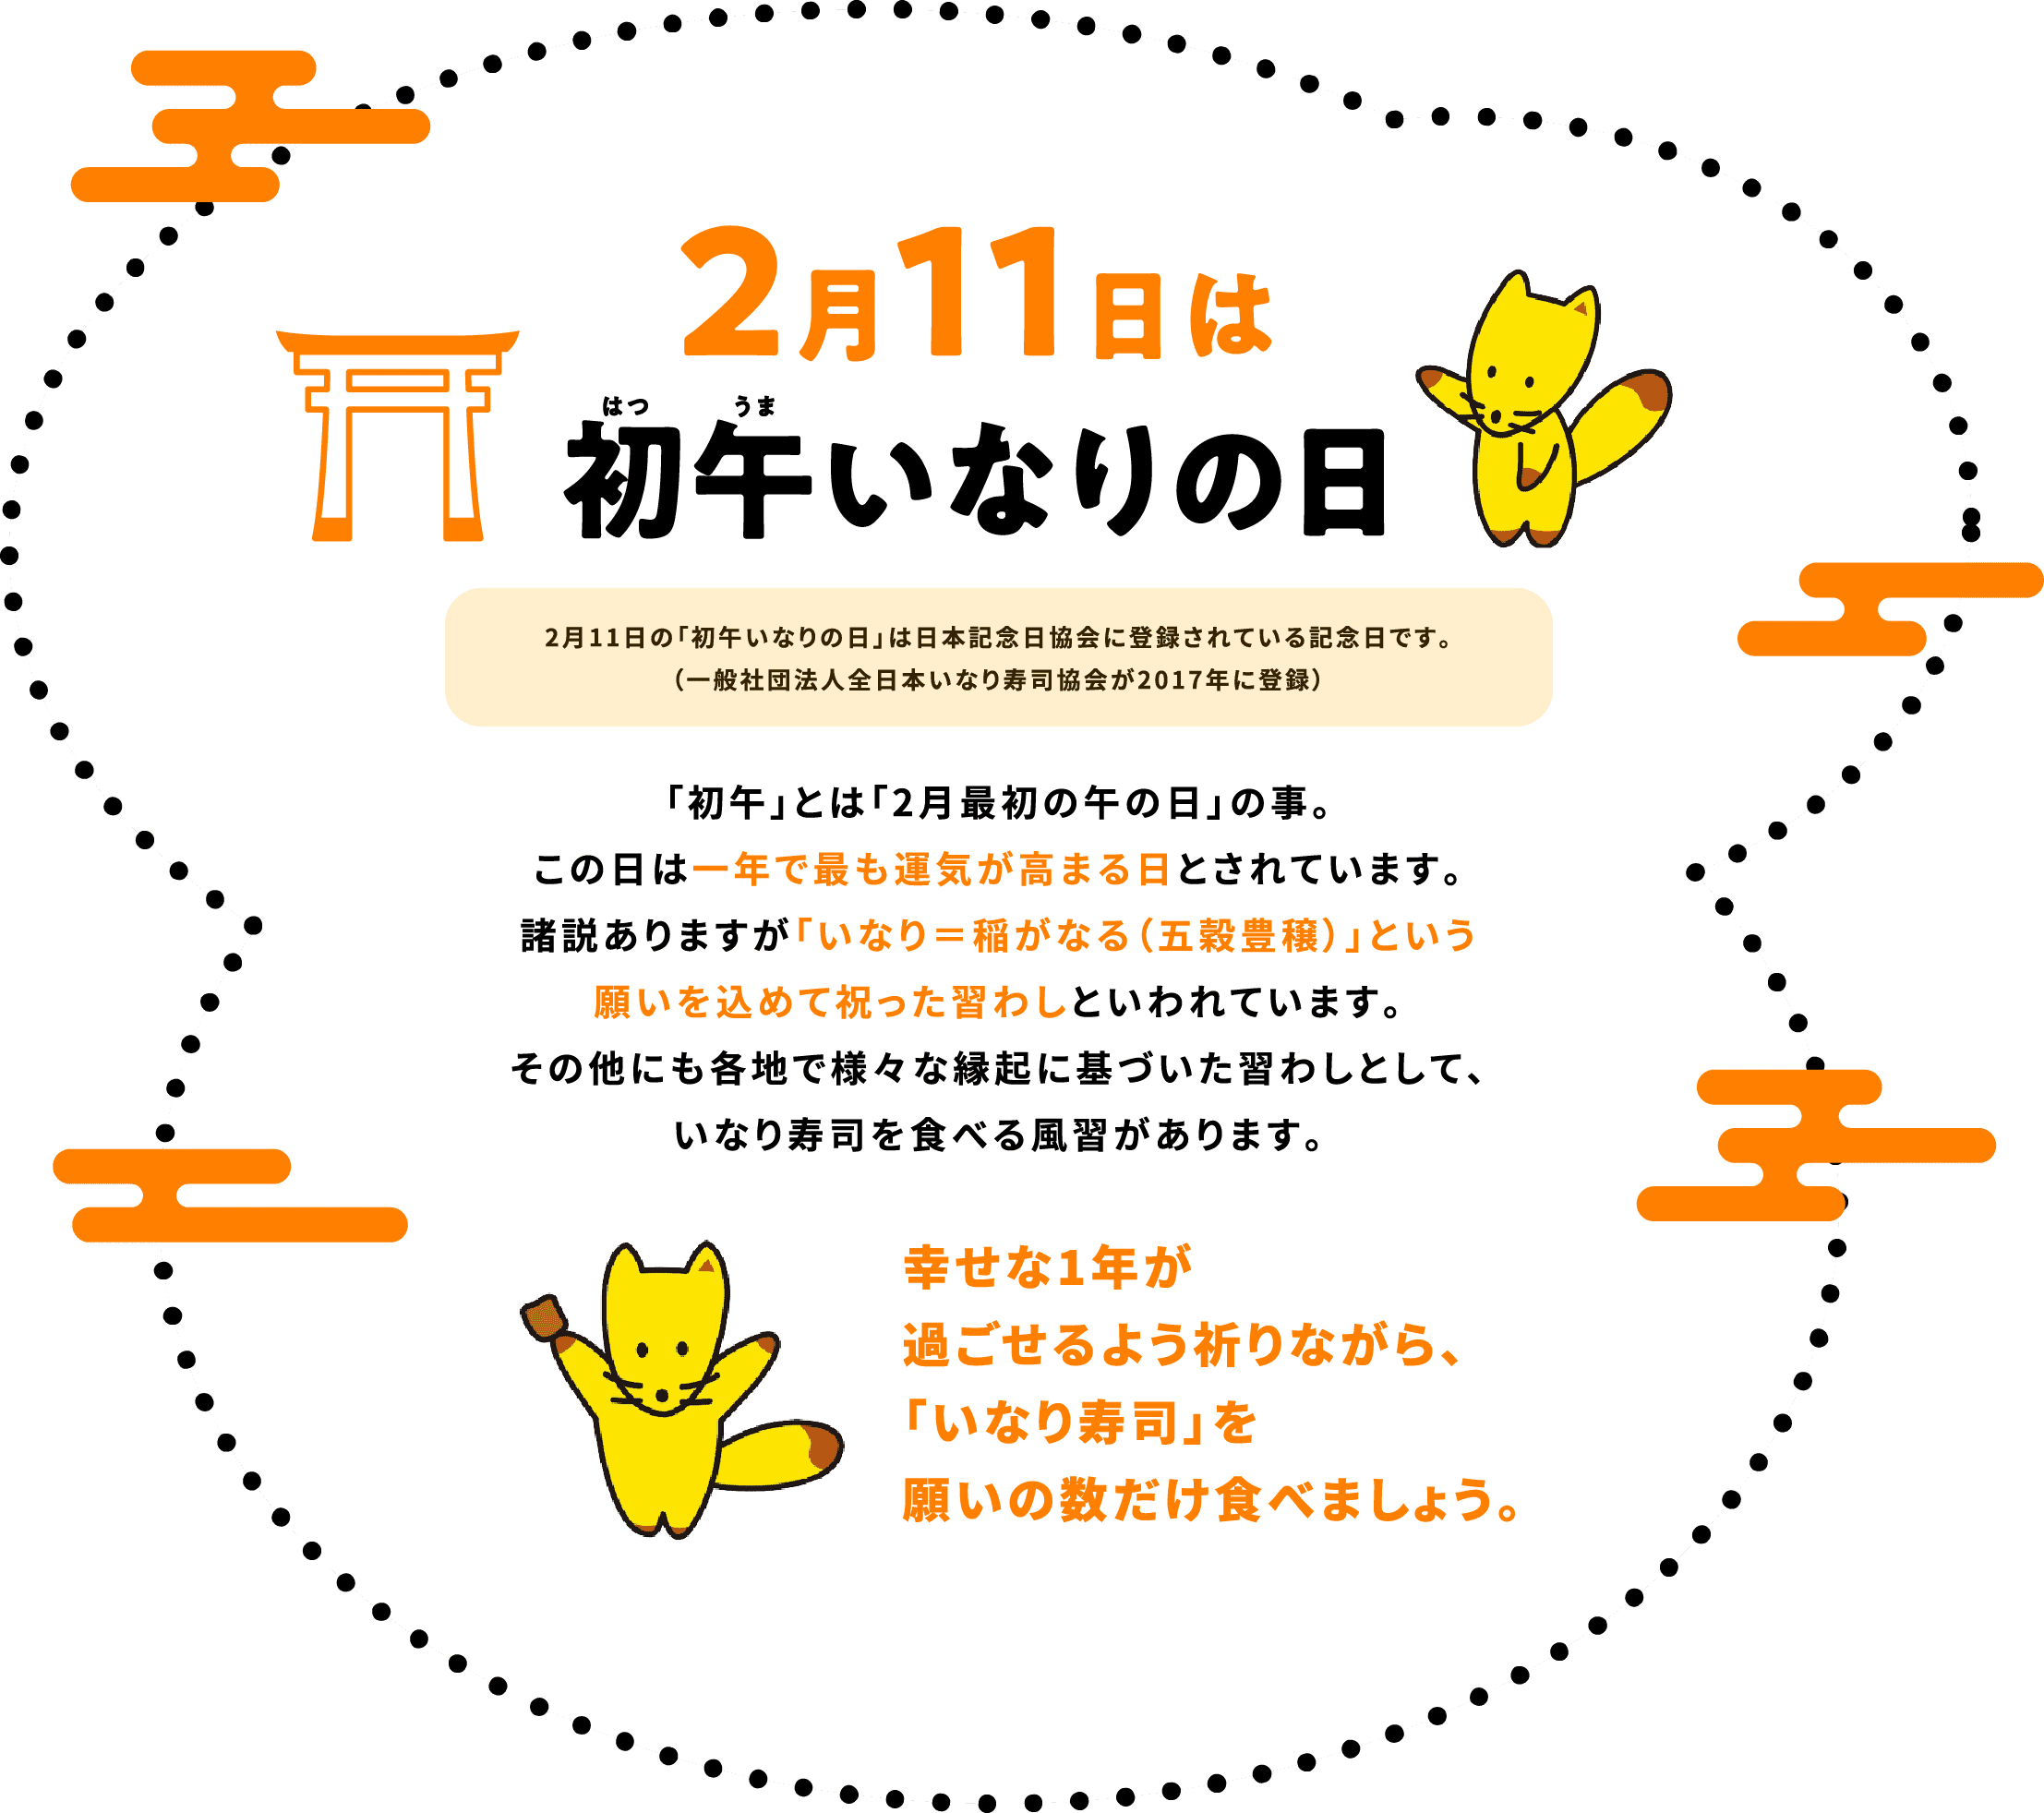 2月11日は初午はつうまいなりの日　2月11日の「初午いなりの日」は日本記念日協会に登録されている記念日です。（一般社団法人全日本いなり寿司協会が2017年に登録）「初午」とは「2月最初の午の日」の事。この日は一年で最も運気が高まる日とされています。諸説ありますが「いなり＝稲がなる（五穀豊穣）」という願いを込めて祝った習わしといわれています。その他にも各地で様々な縁起に基づいた習わしとして、いなり寿司を食べる風習があります。幸せな1年が過ごせるよう祈りながら、「いなり寿司」を願いの数だけ食べましょう。